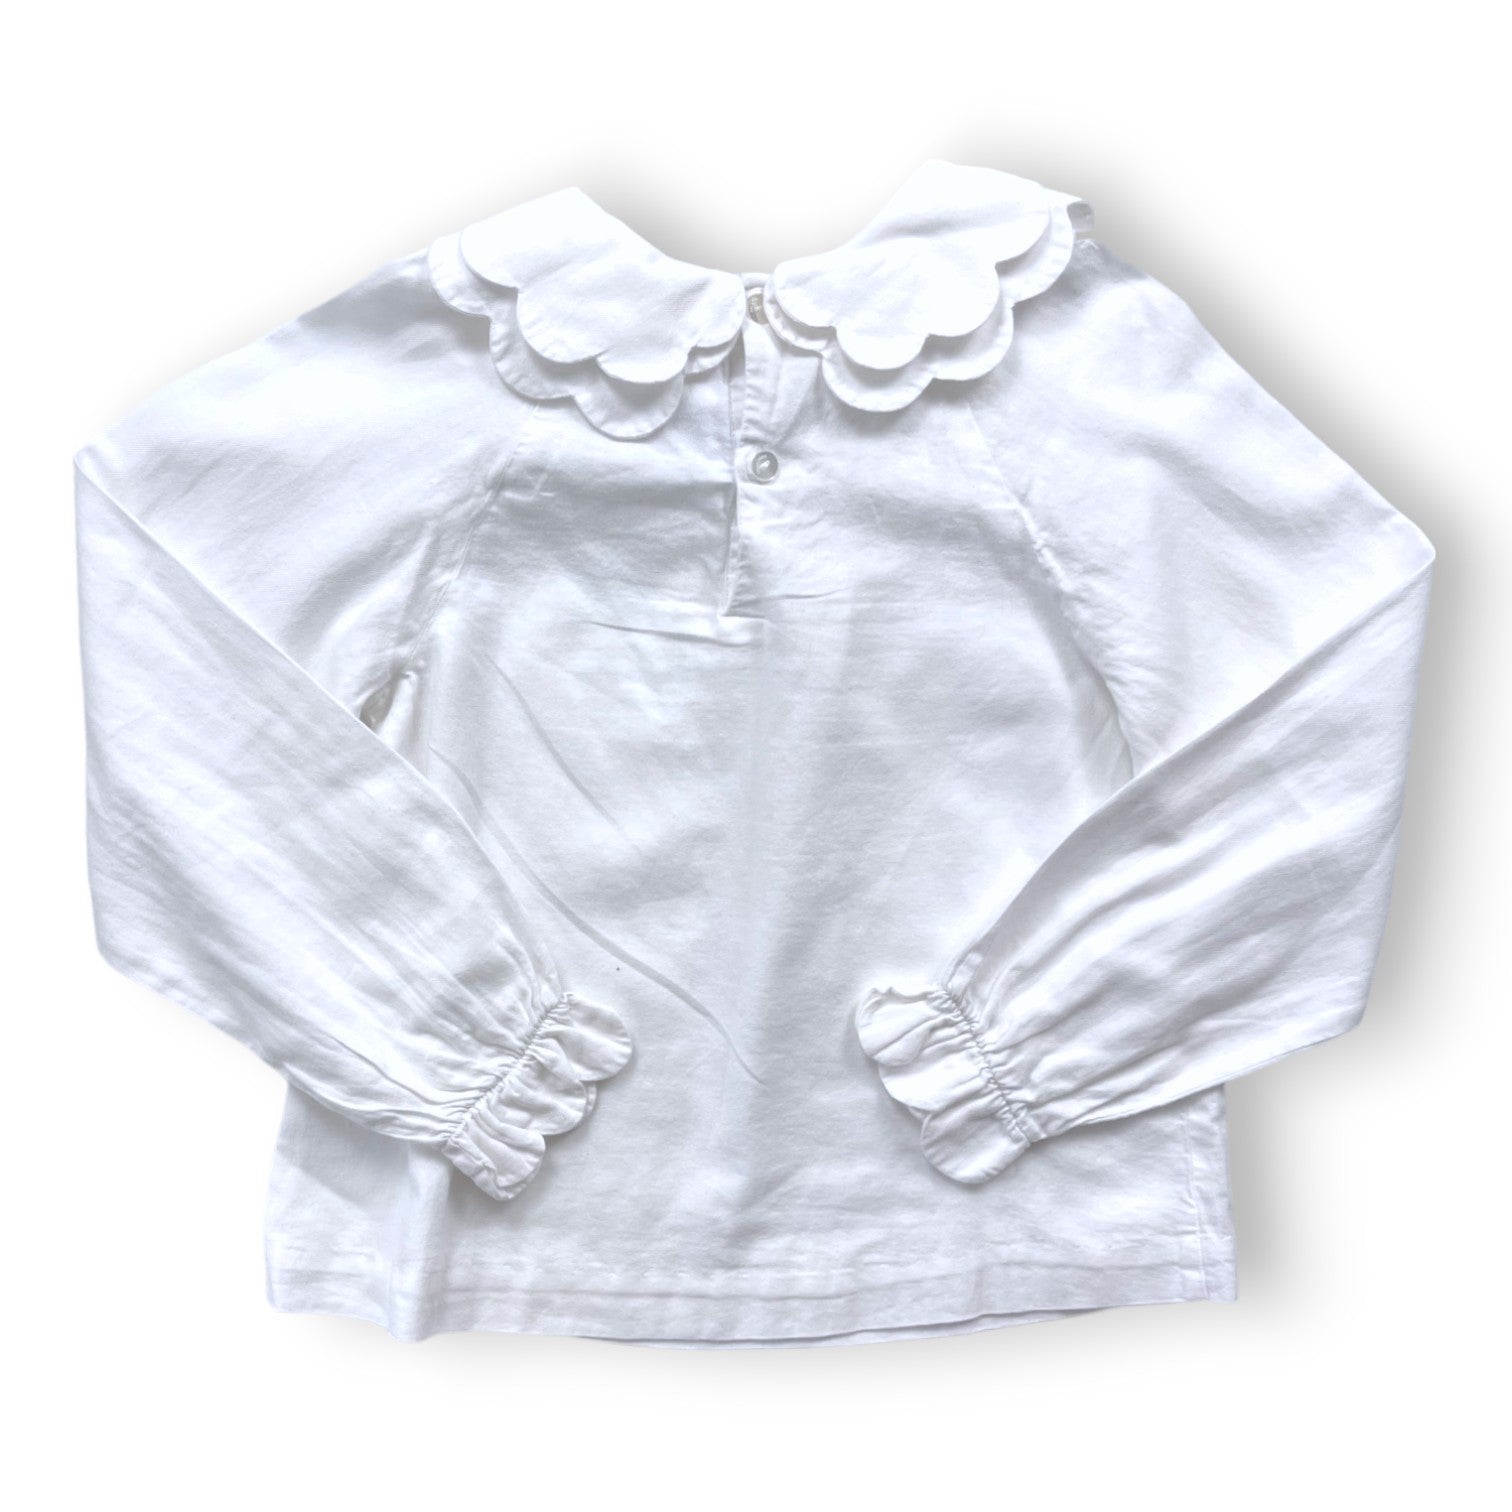 JACADI - T shirt manches longues blanc - 8 ans